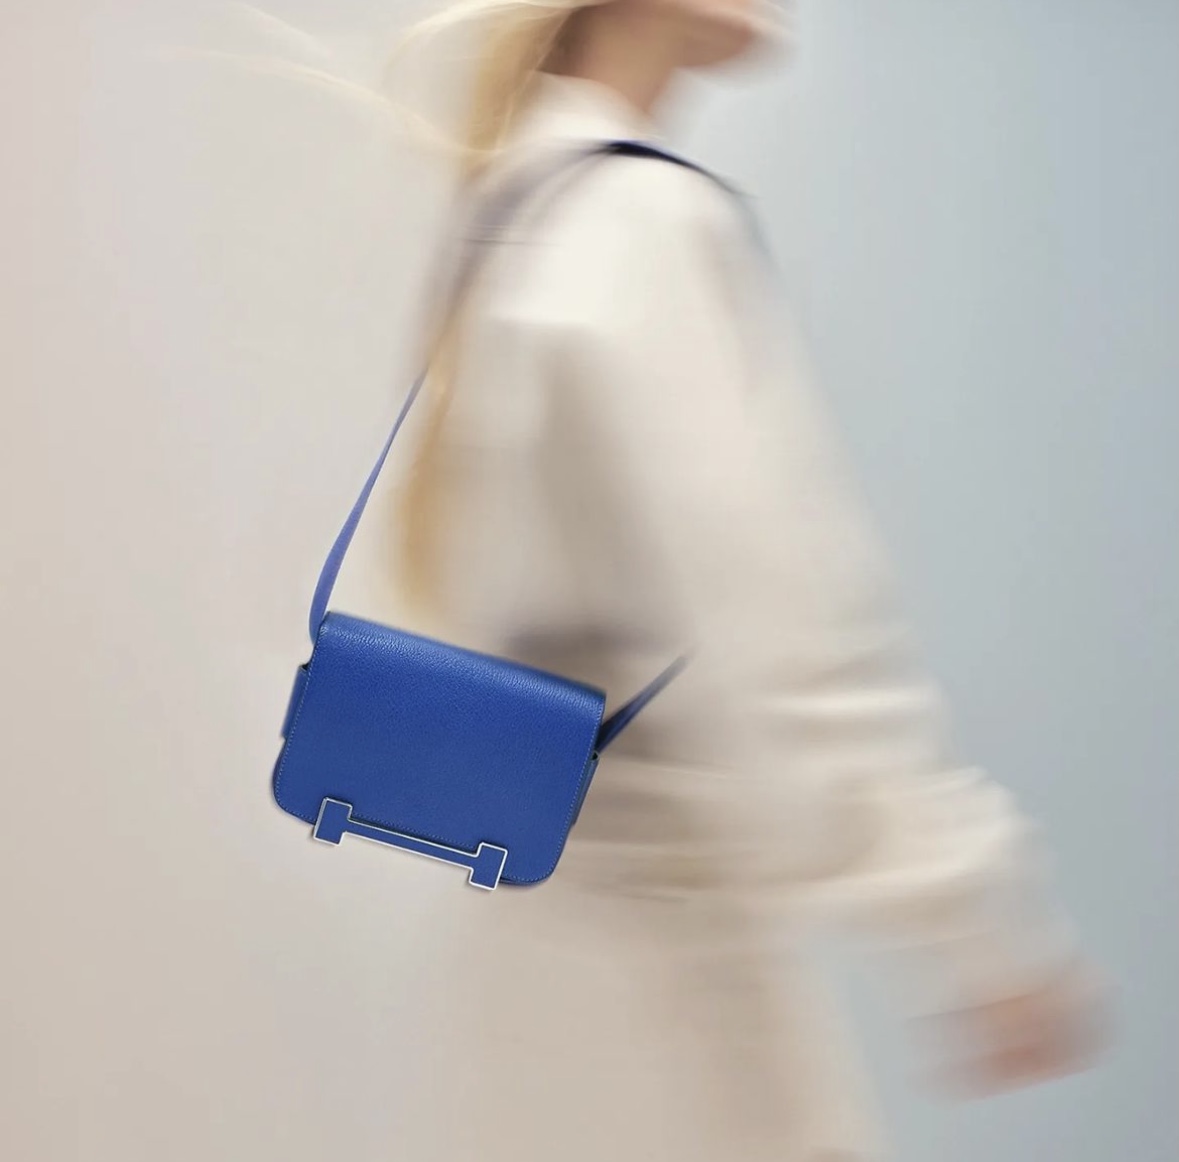 愛馬仕包包價格 Hermès 2022 price Geta bag Bleu electrique Chevre Mysore